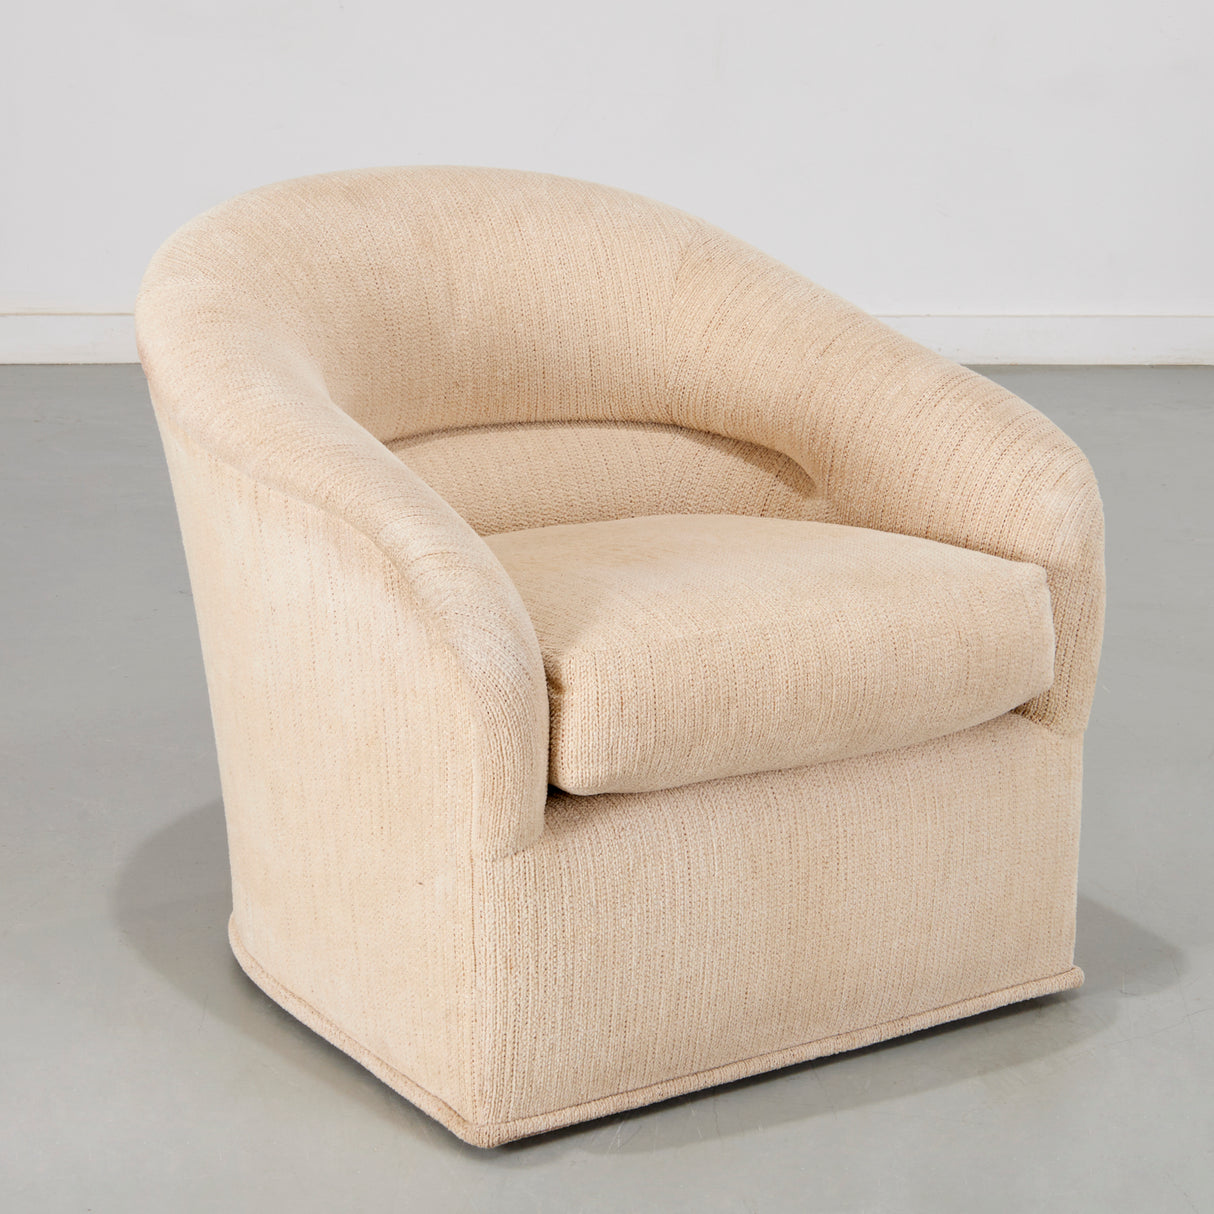 A Sublime 1970's Armchair